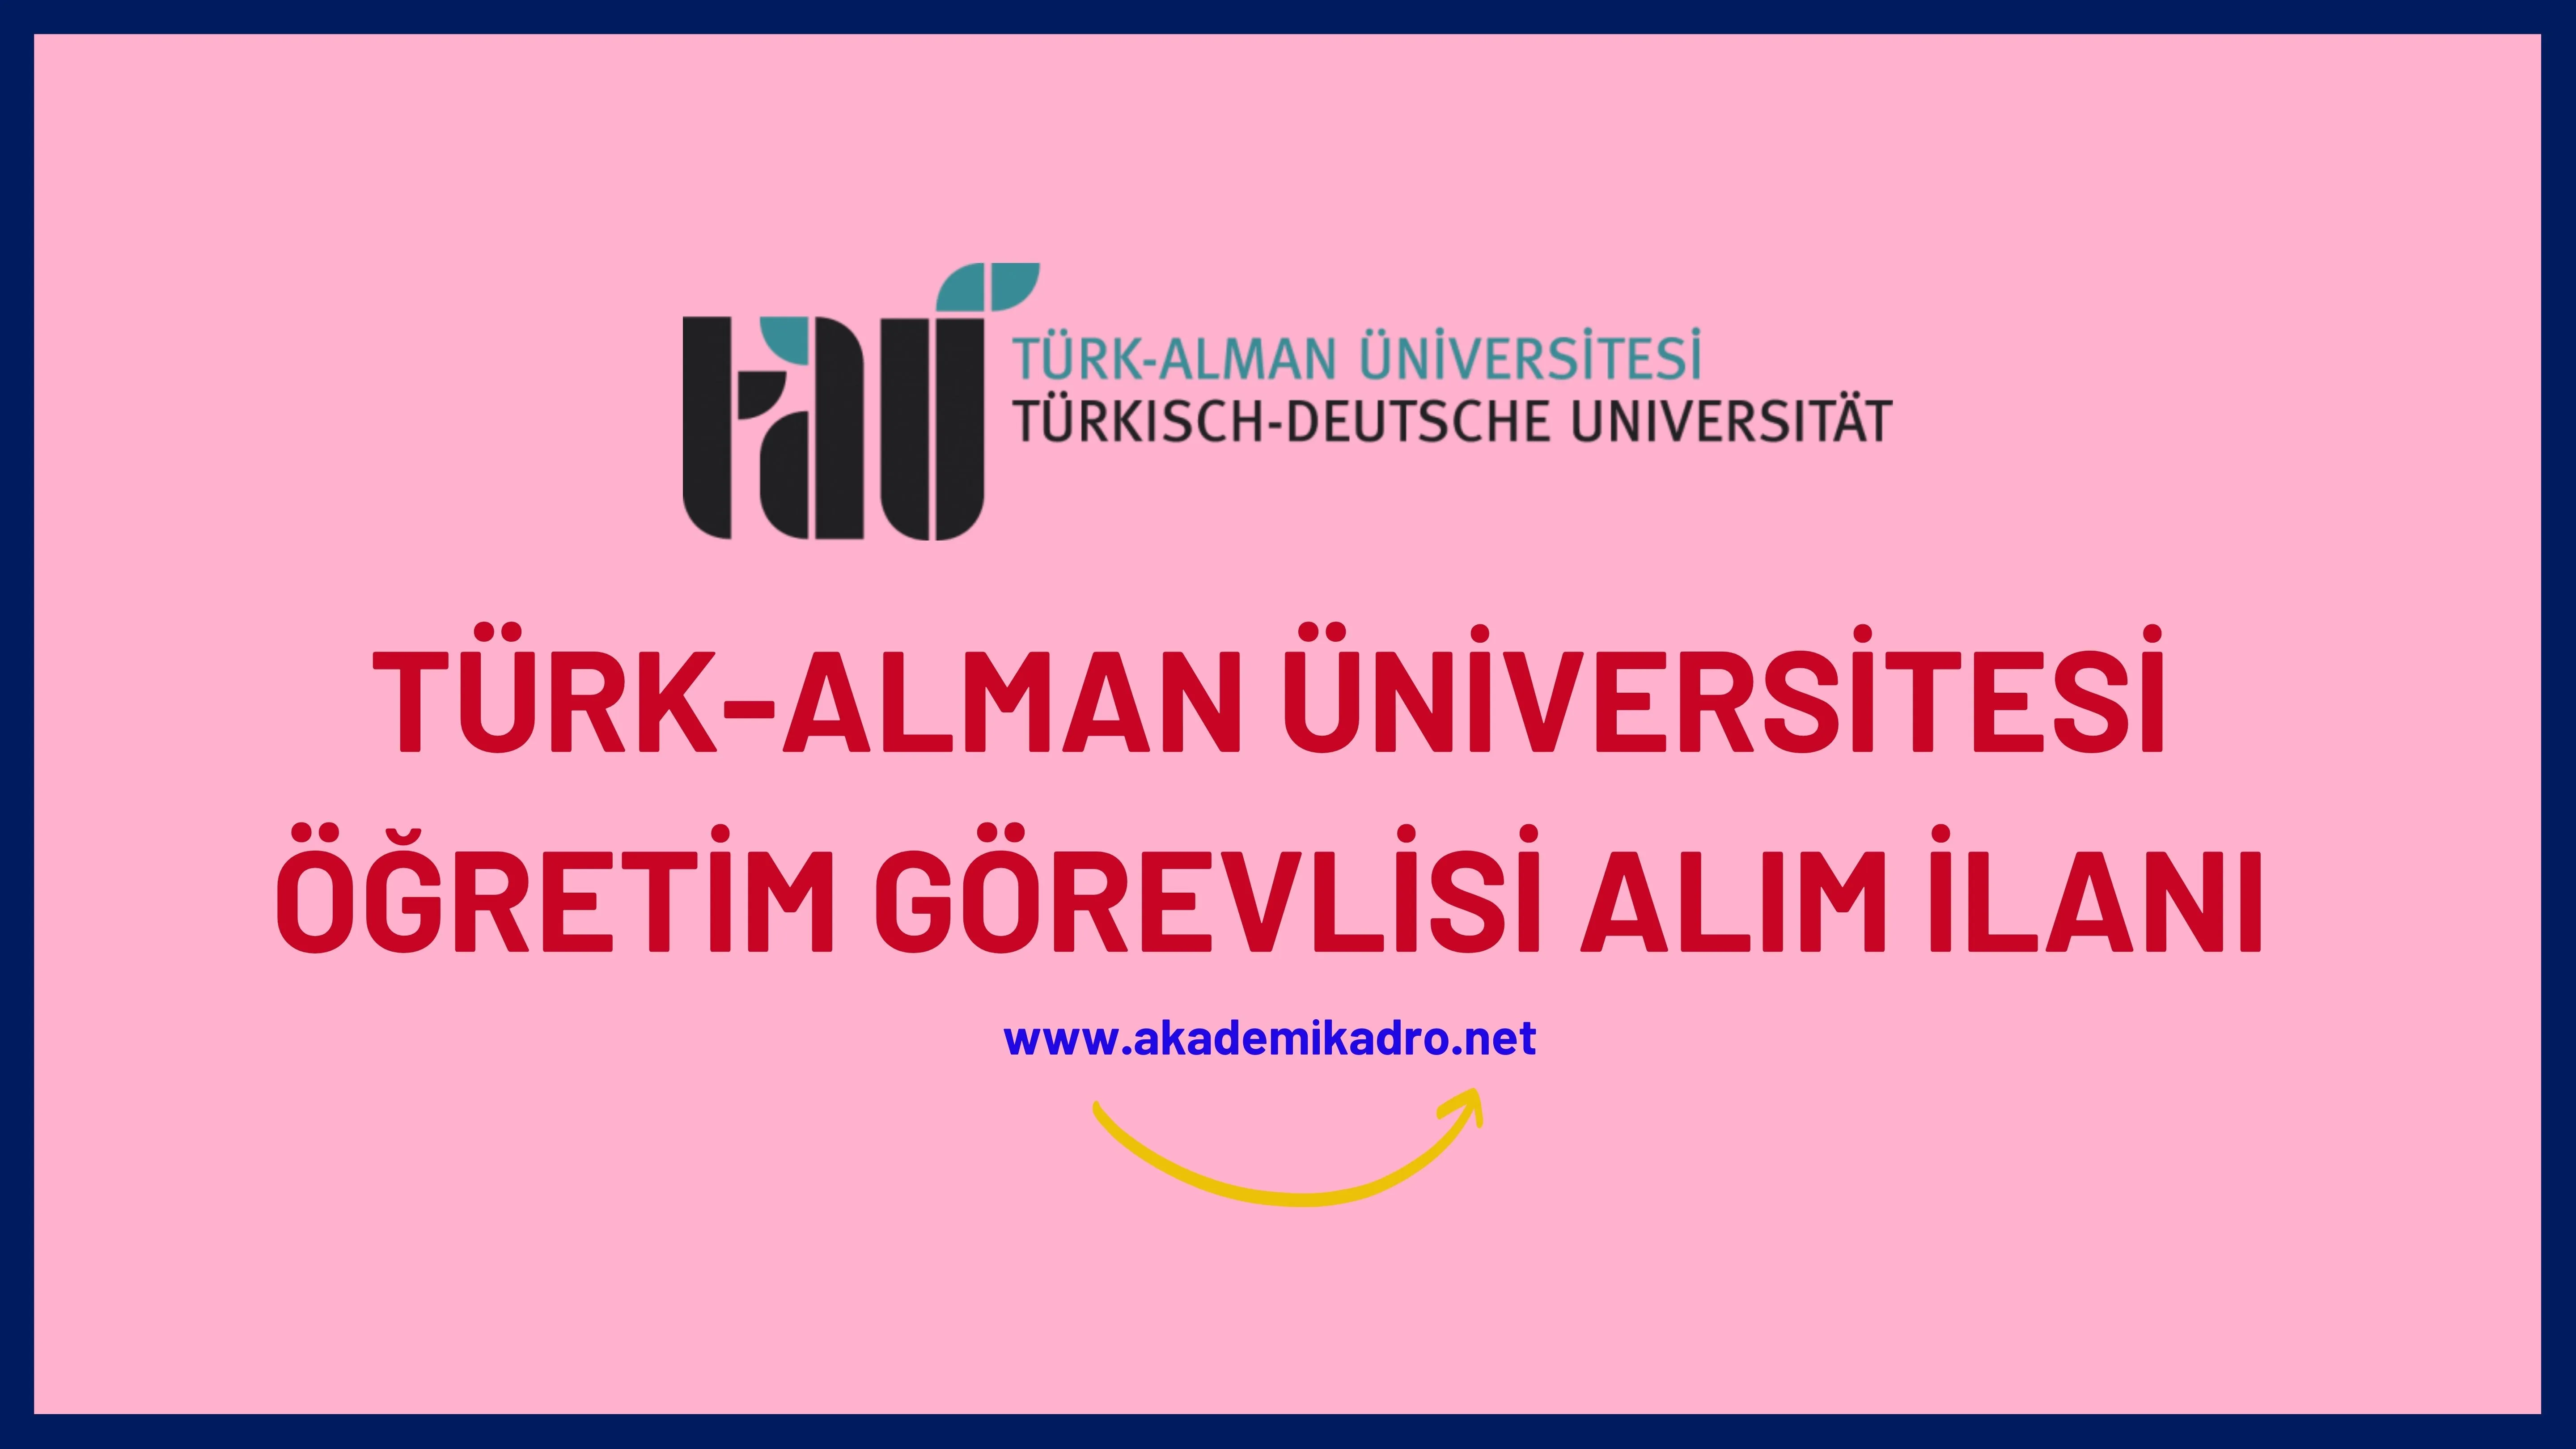 Türk-Alman Üniversitesi 2 Öğretim görevlisi alacak. Son başvuru tarihi 06 Ocak 2023.